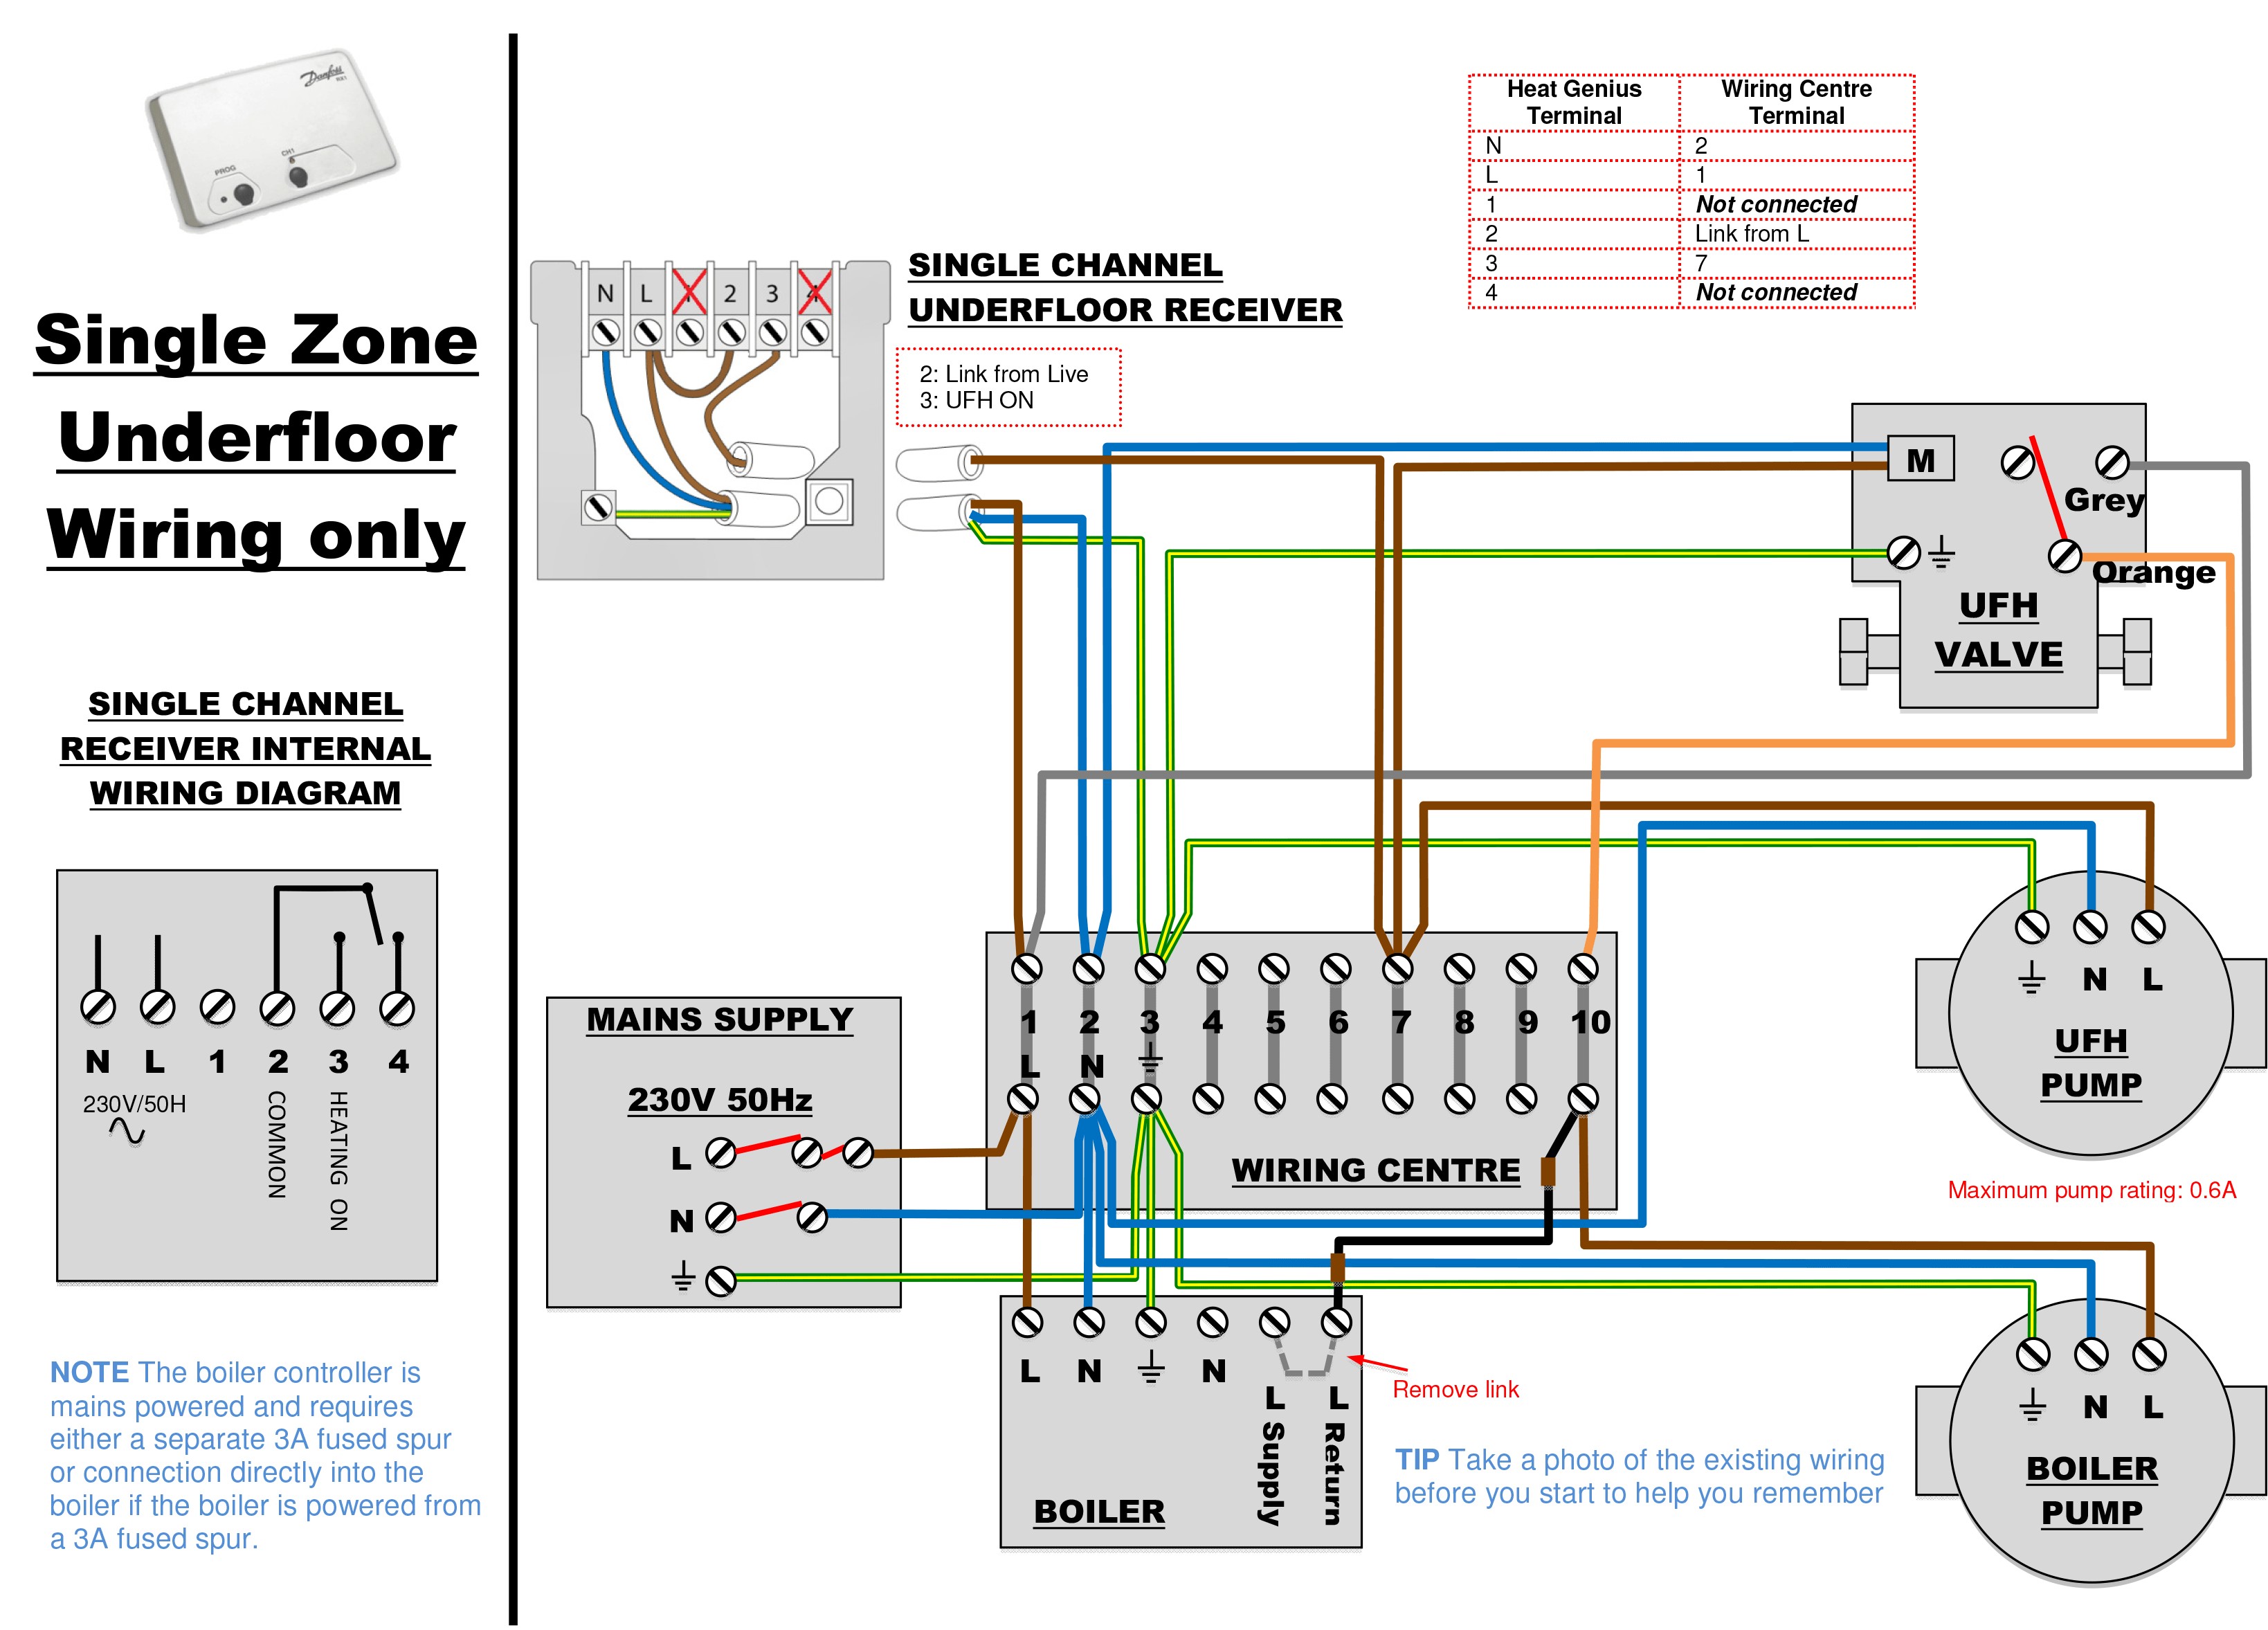 Electric Underfloor Heating Wiring Diagram Heat Trace Wiring Diagram Of Electric Underfloor Heating Wiring Diagram